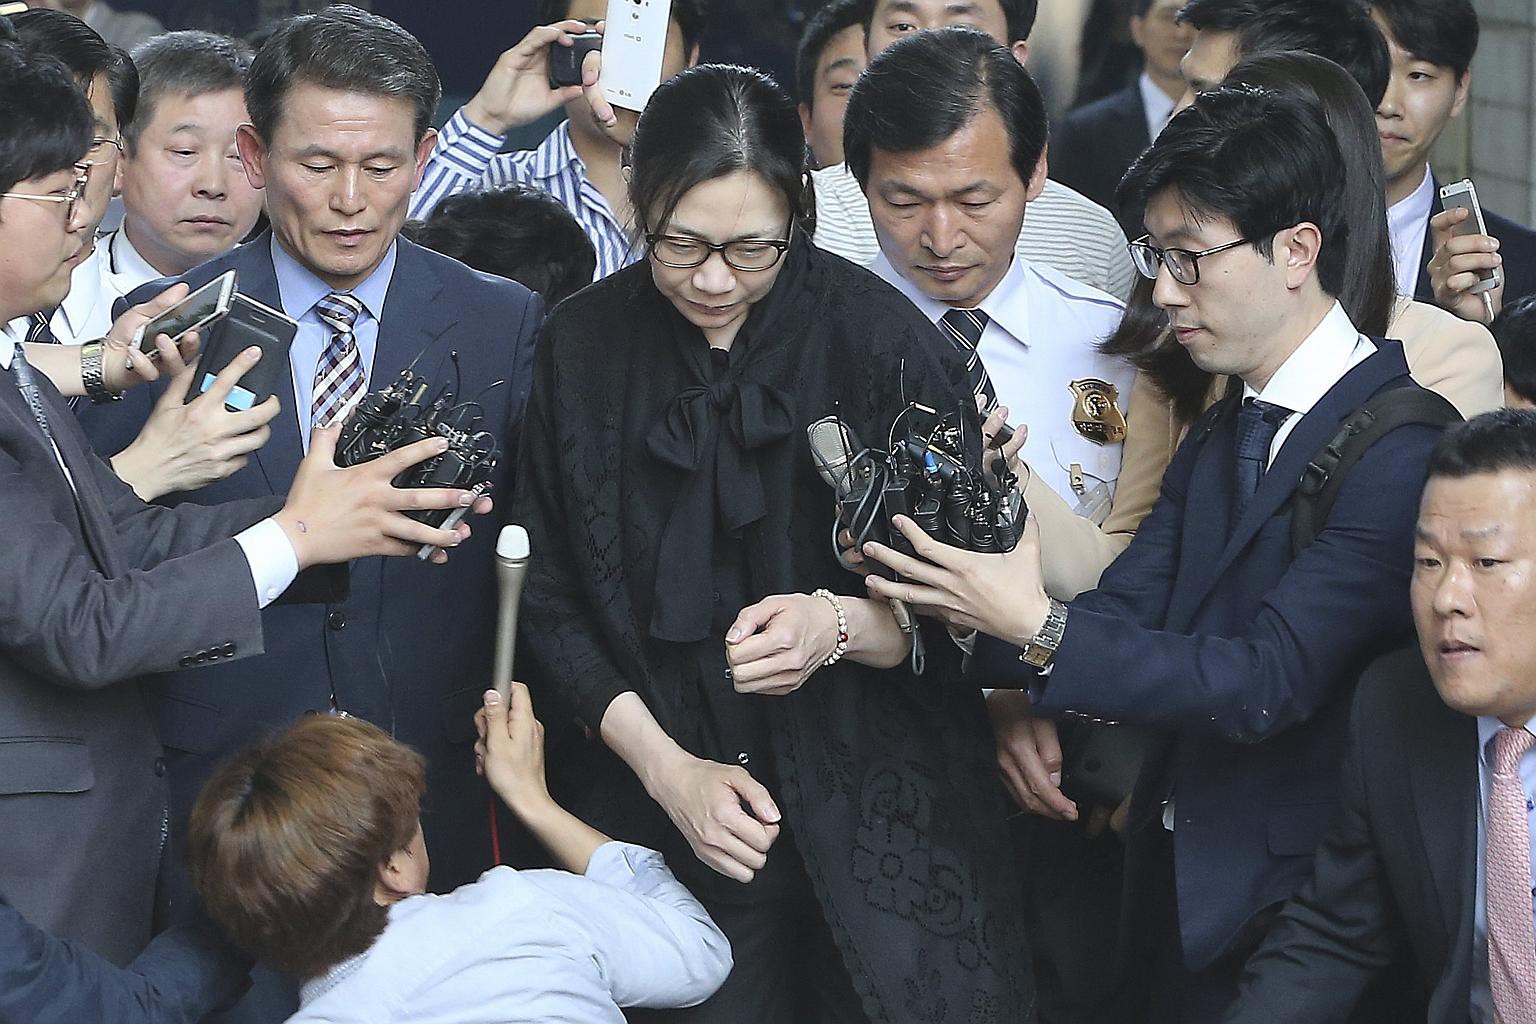 Cái giá phải trả của cậu ấm cô chiêu nhà Korea Air sau bê bối quyền lực: Từ đình chỉ công việc cho tới đi tù 1 năm - Ảnh 2.